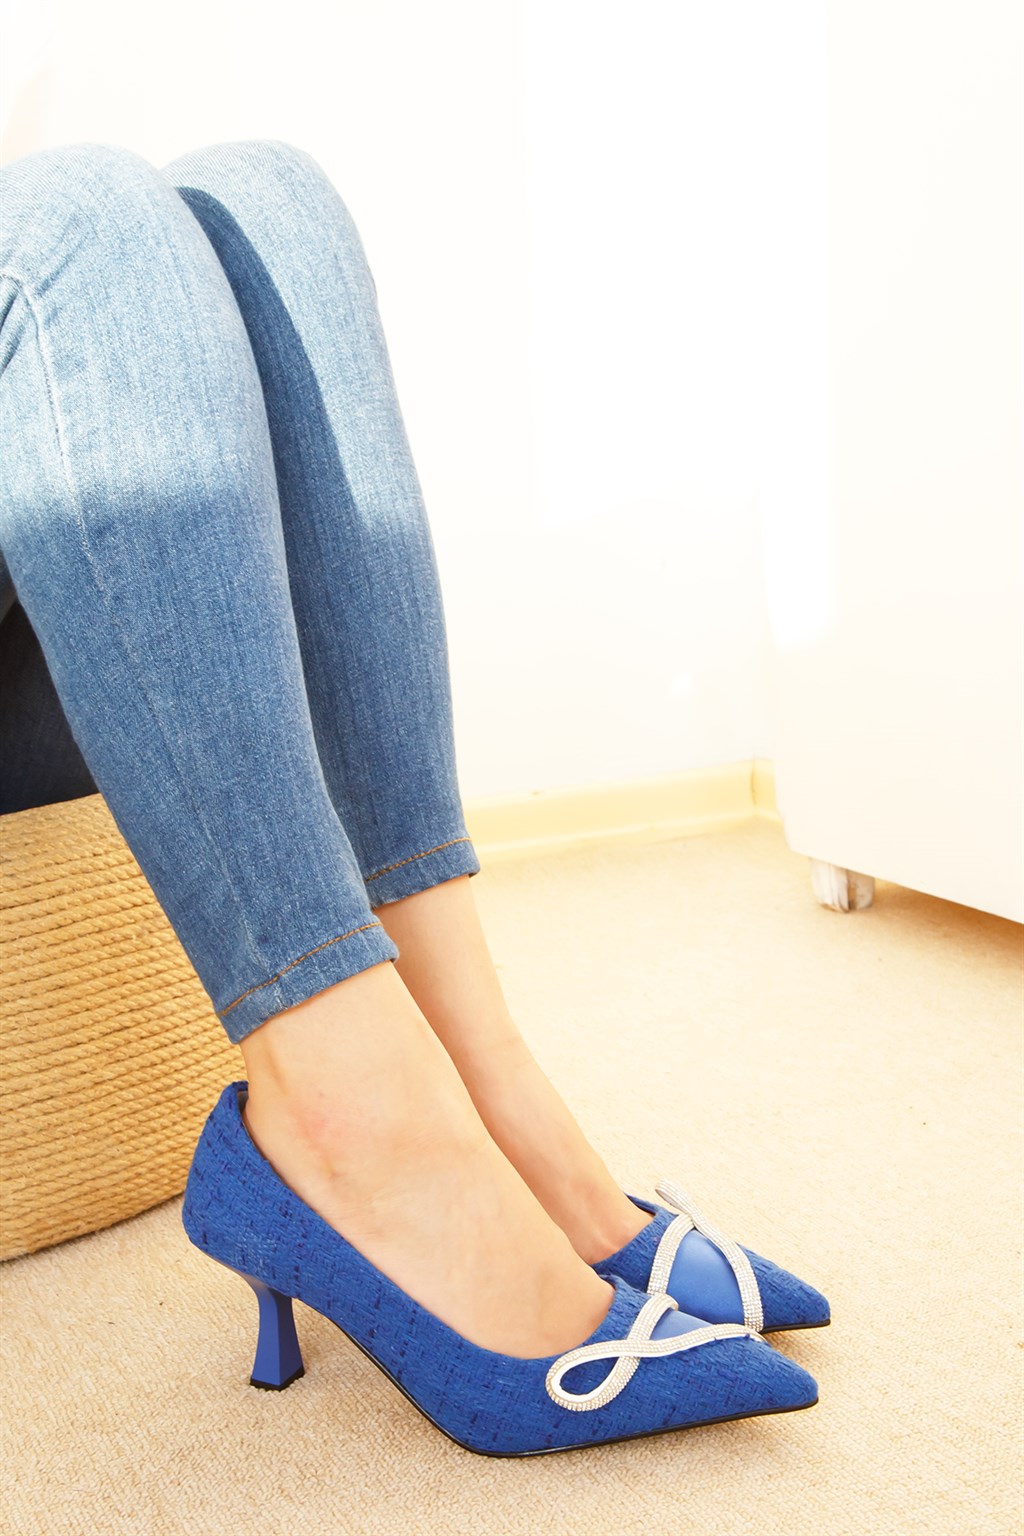 Shoetek Elizabeth Kadın Stiletto İnce Topuk Triko Dokumalı Taşlı Mavi